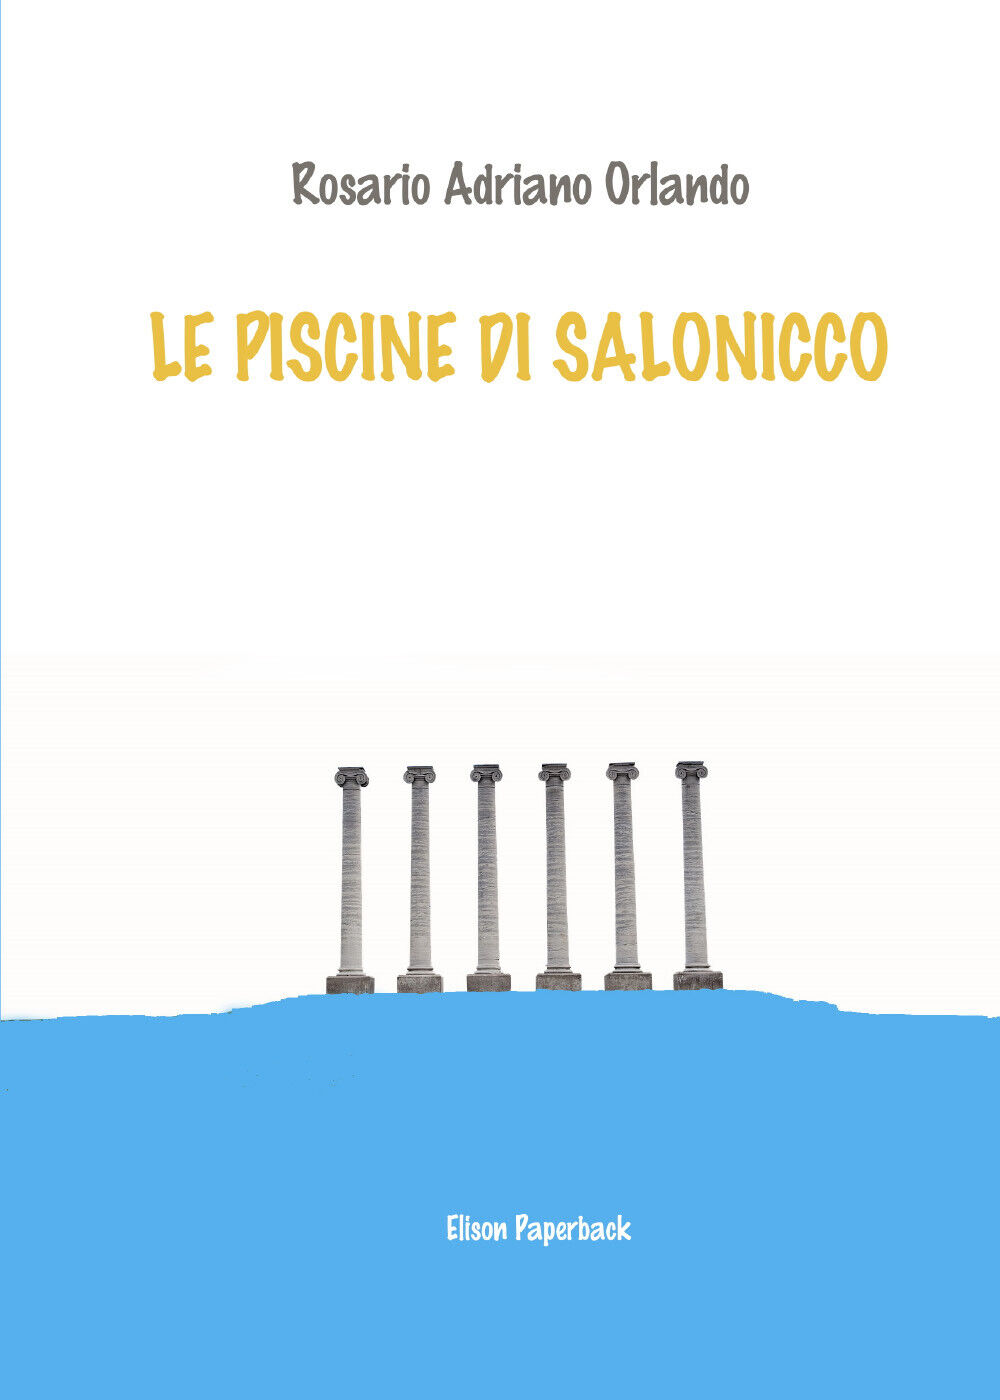 Le piscine di Salonicco di Rosario Adriano Orlando,  2021,  Elison Paperback libro usato